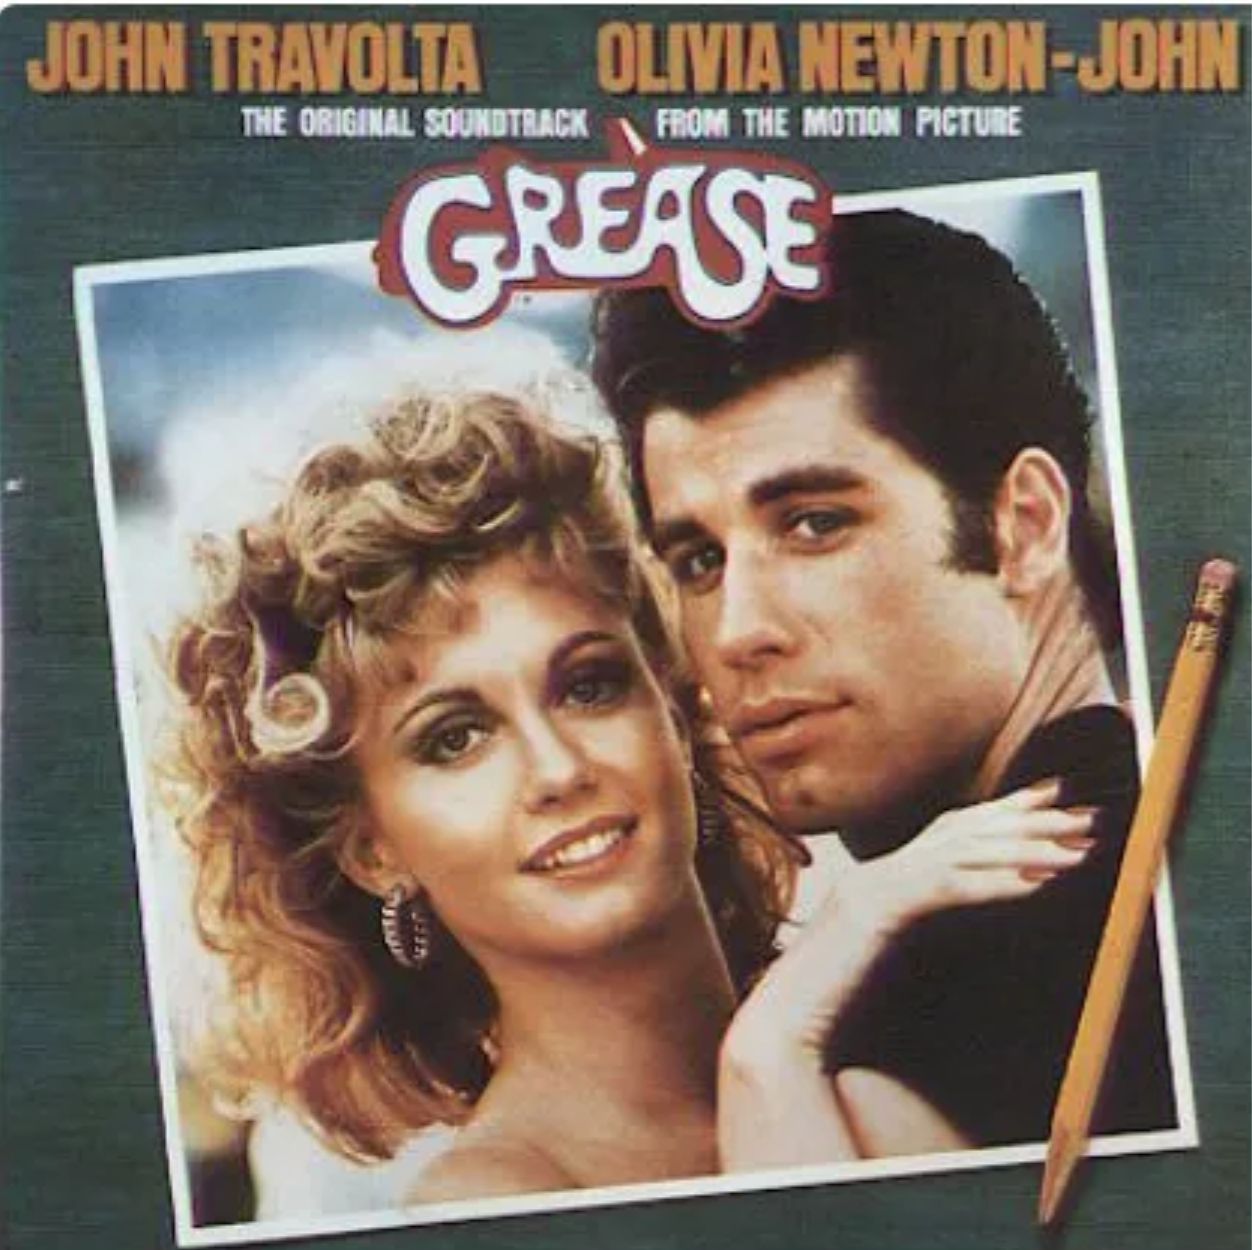 Cartel de Grease con Jhon Travolta y Olivia Newton